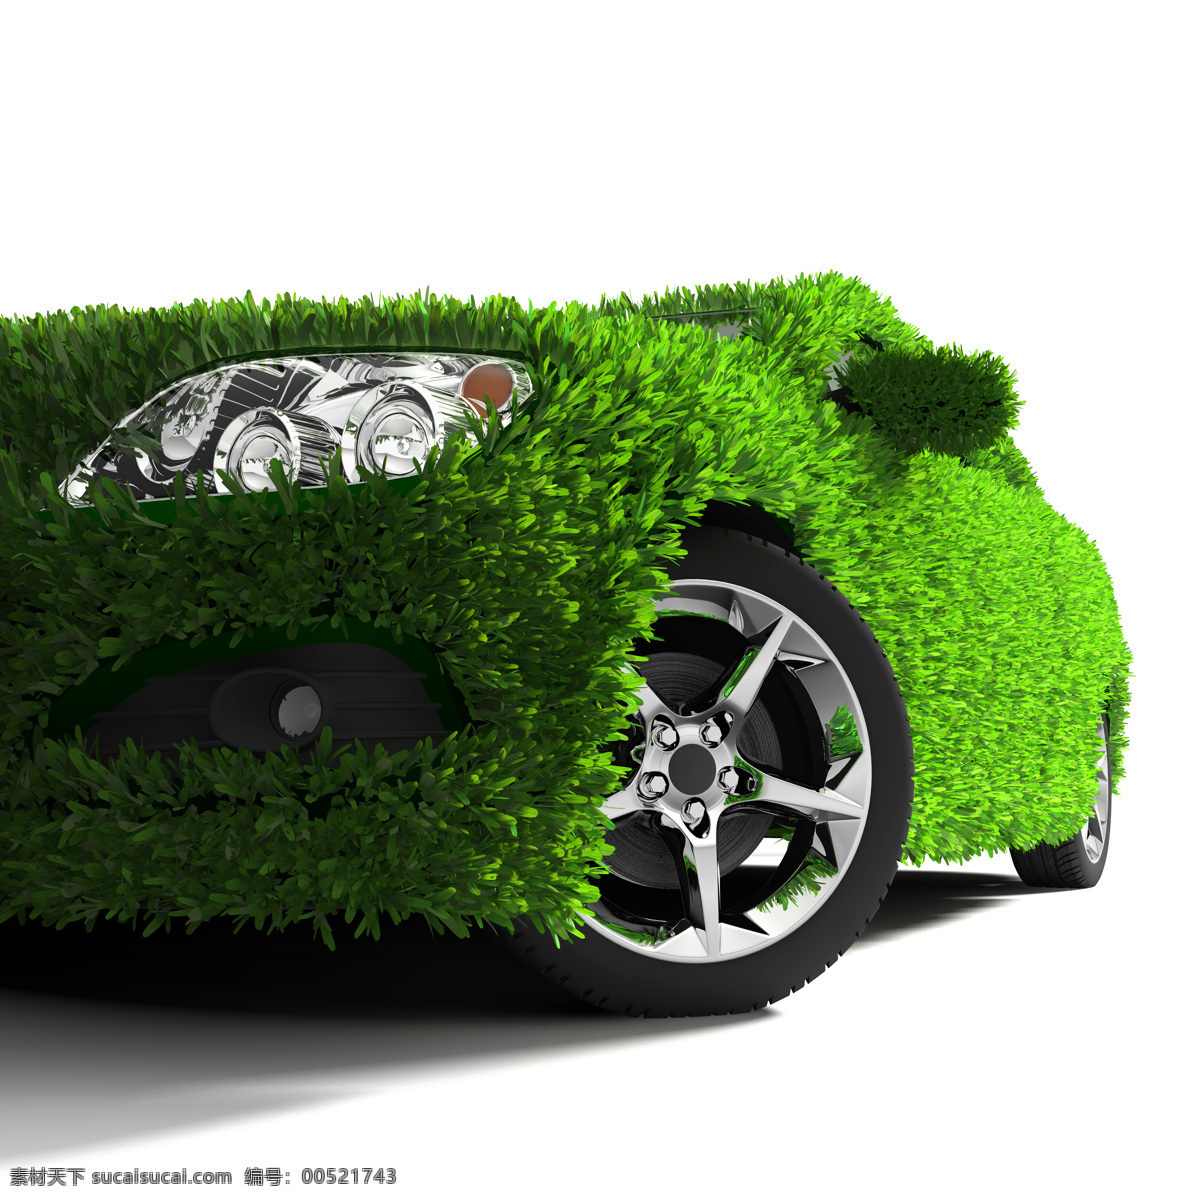 高清 设计素材 环保汽车 绿色汽车 汽车 汽车背景 汽车广告 汽车海报 汽车装饰 绿色自然汽车 环保公益海报